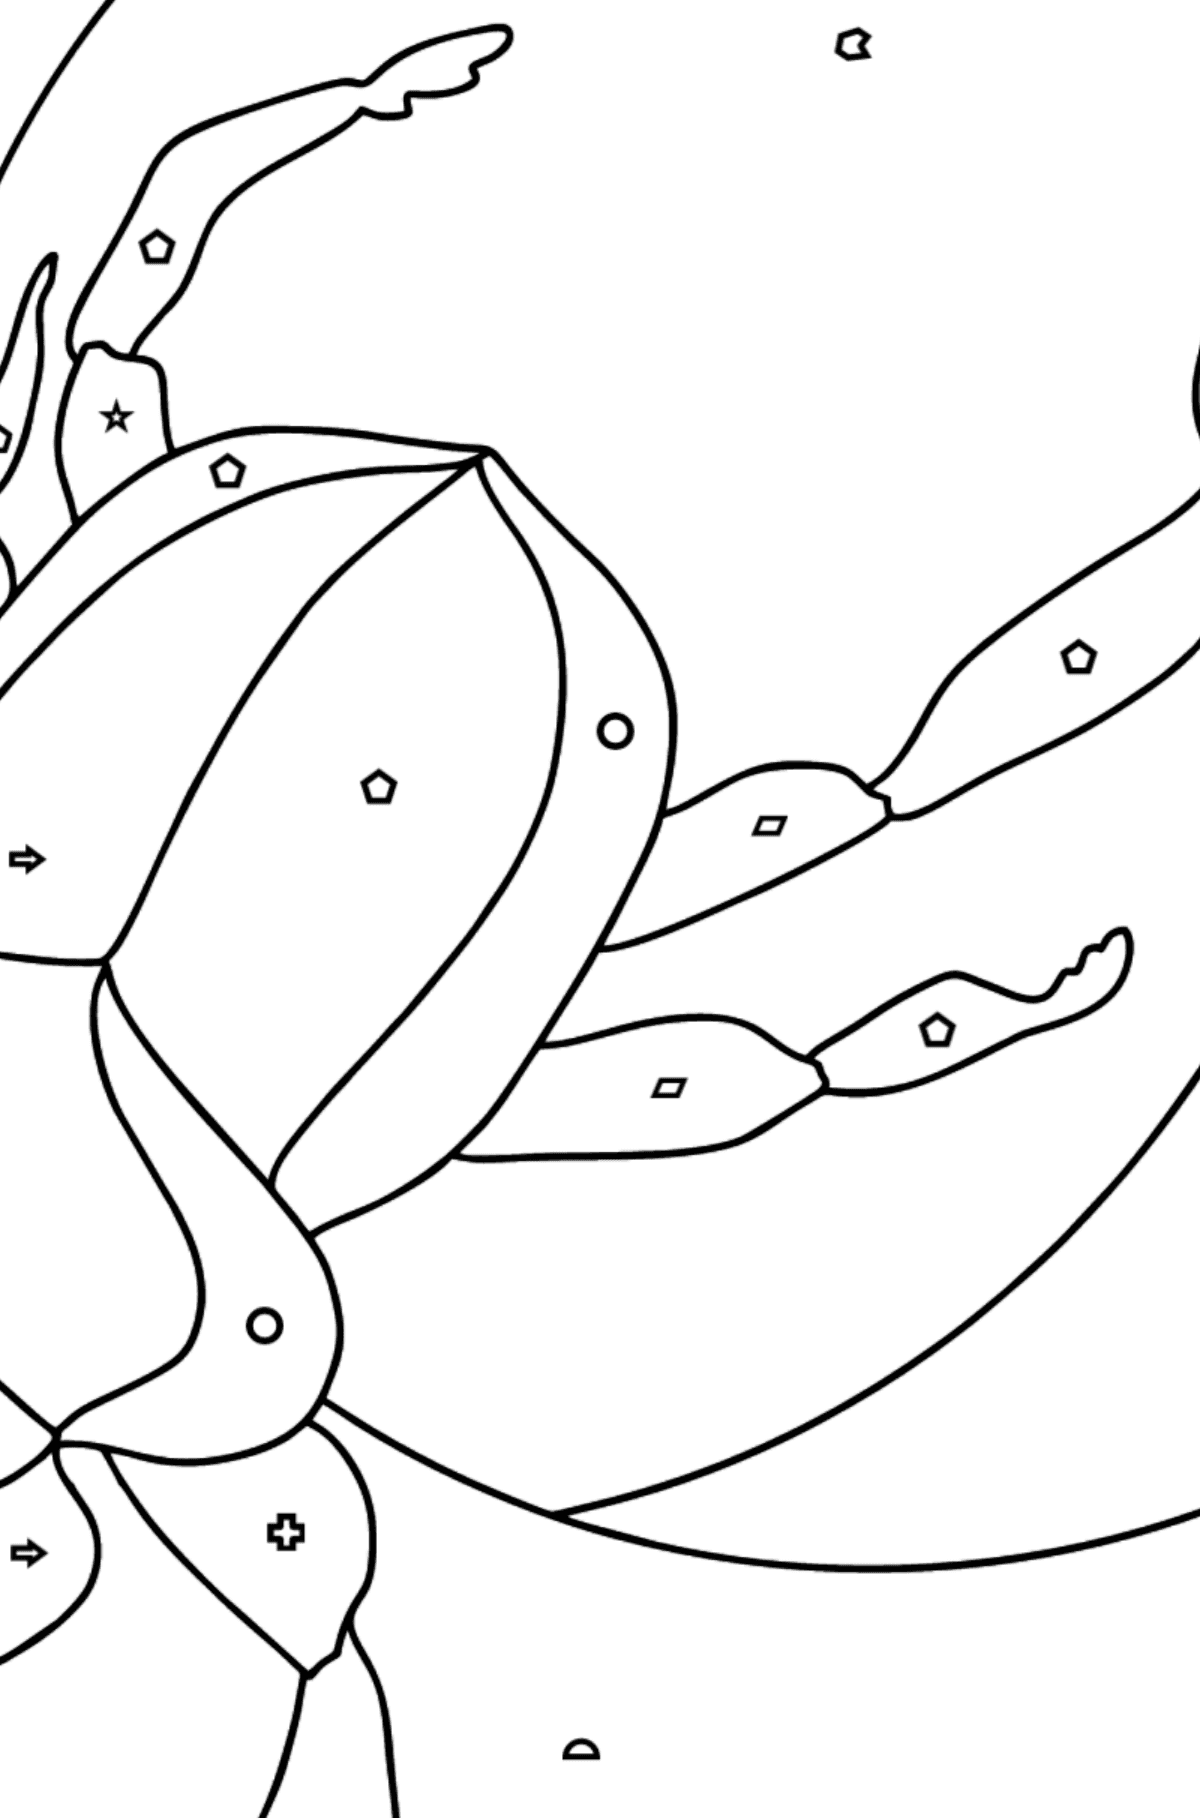 Dibujo para Colorear - Un Escarabajo o el Símbolo de la Renovación  - Colorear por Formas Geométricas para Niños